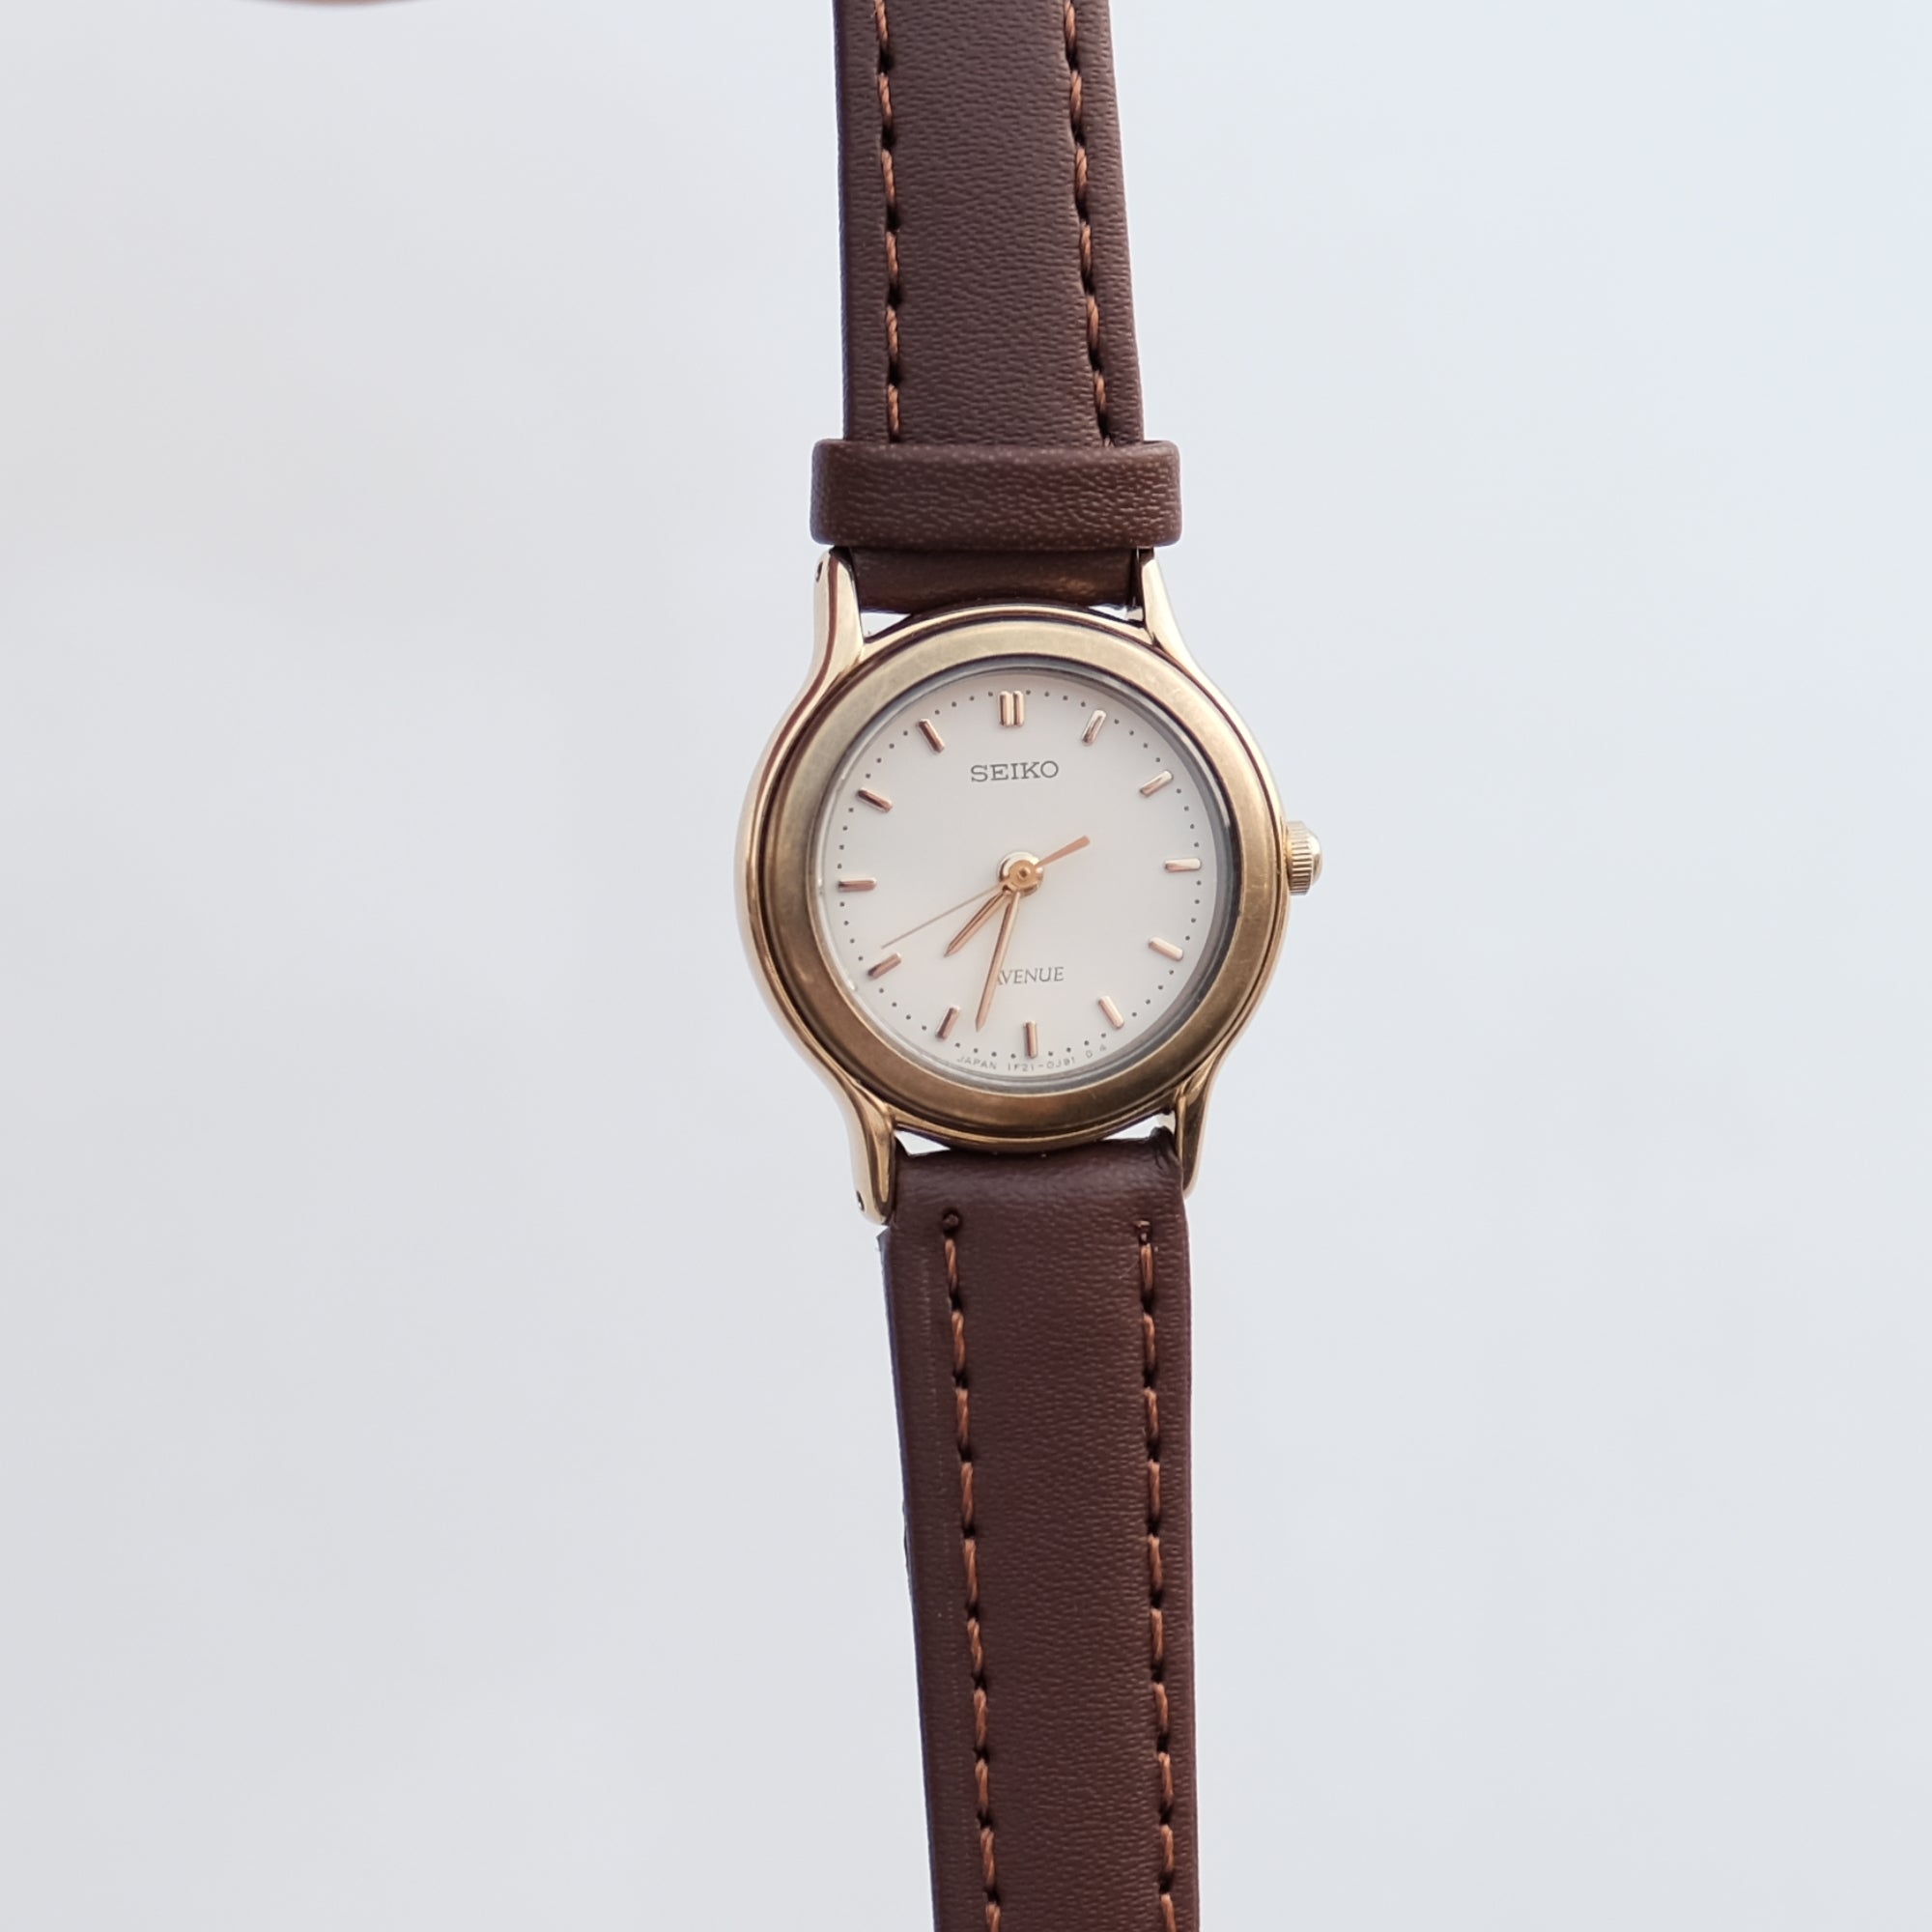 Vintage Seiko Watch